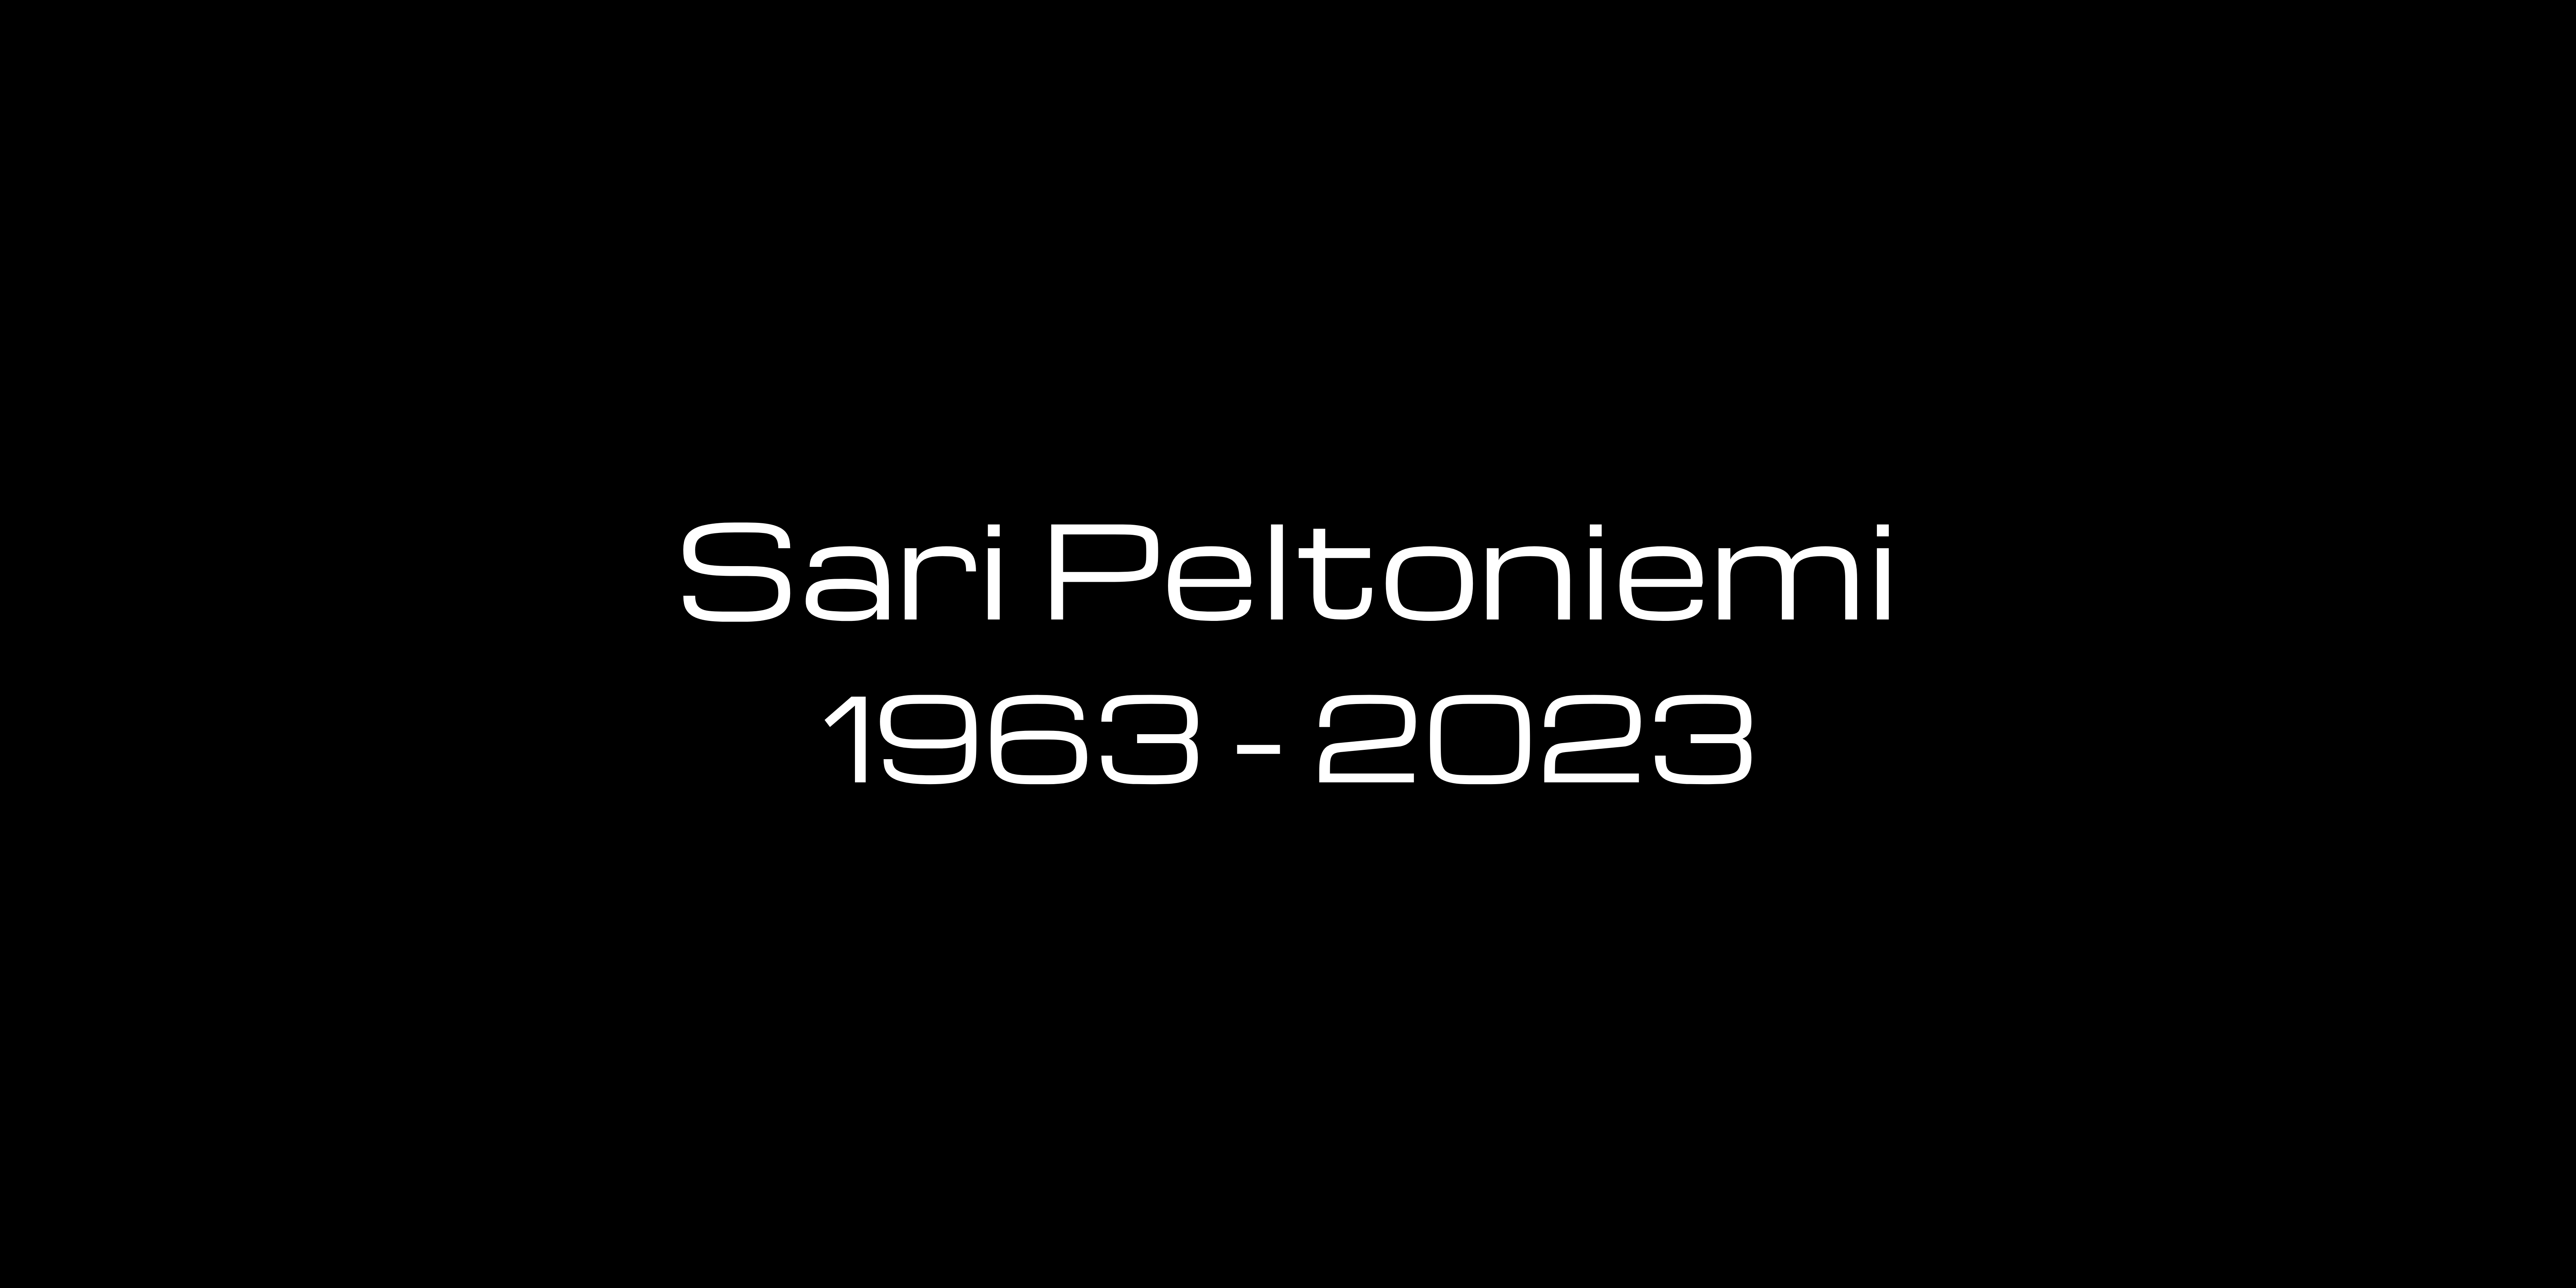 Sari Peltoniemi in memoriam